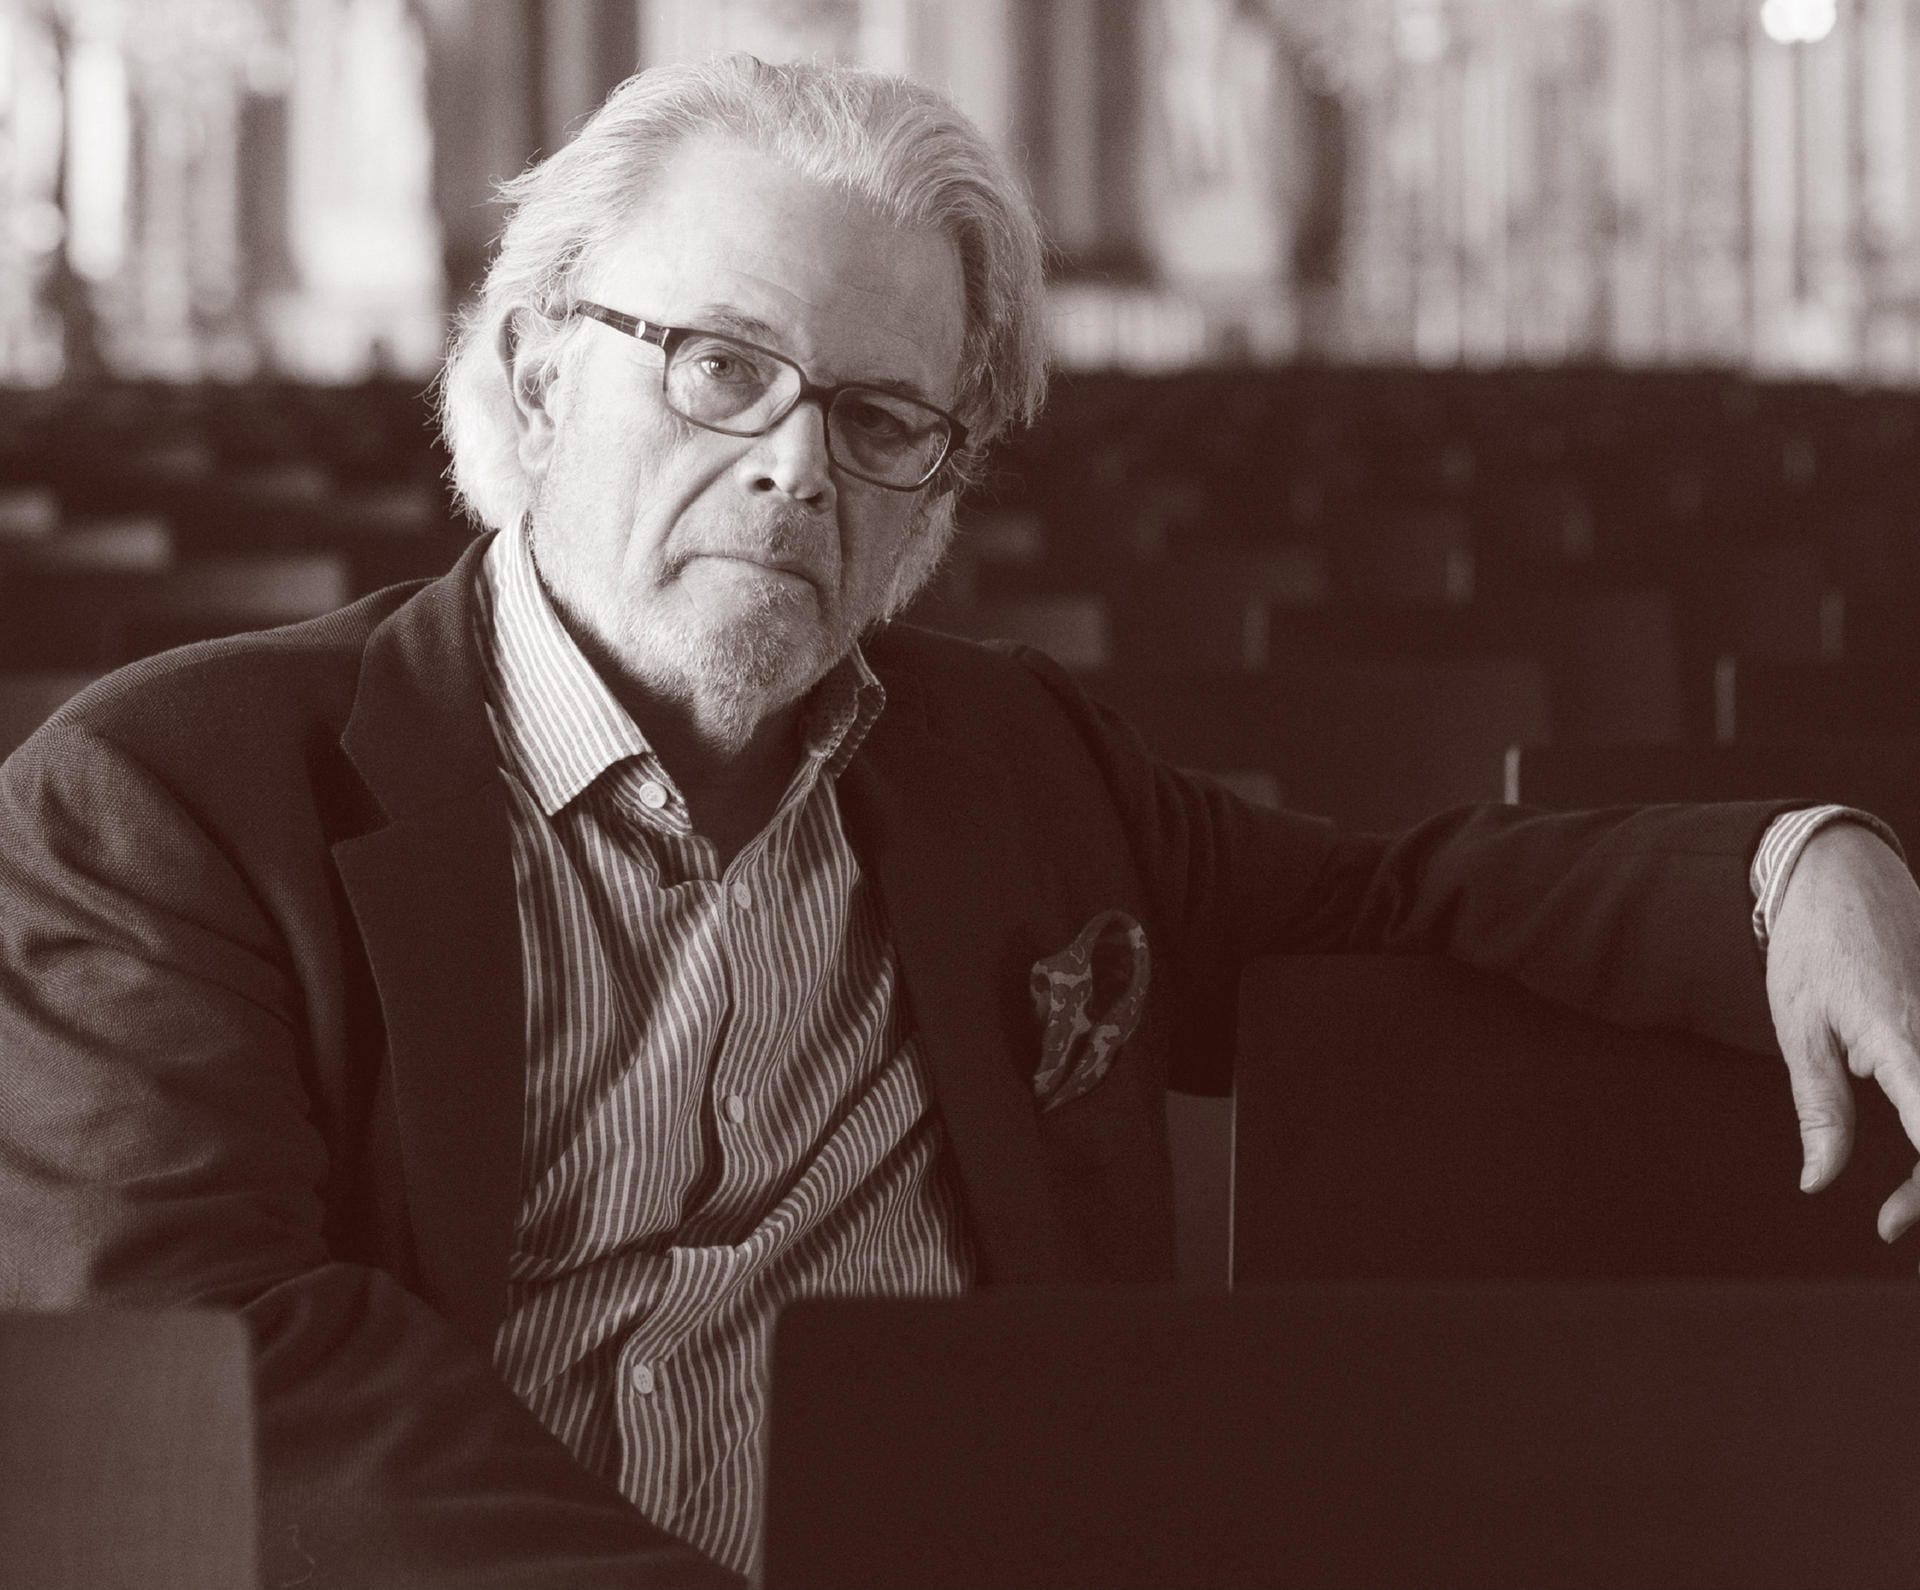 Dirigent Enoch zu Guttenberg ist am 15. Juni im Alter von 71 Jahren gestorben.